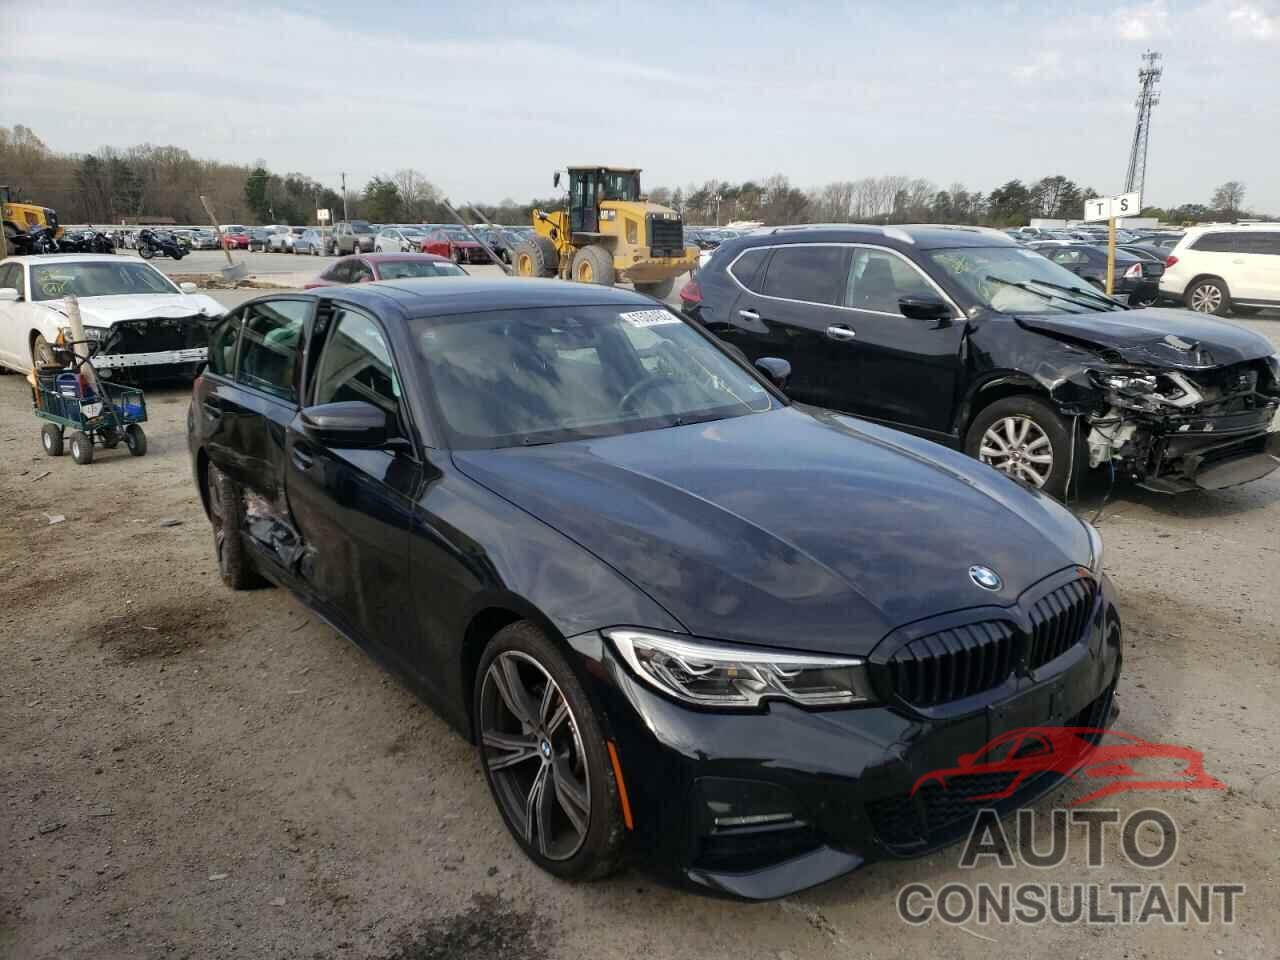 BMW 3 SERIES 2020 - 3MW5R7J08L8B11003